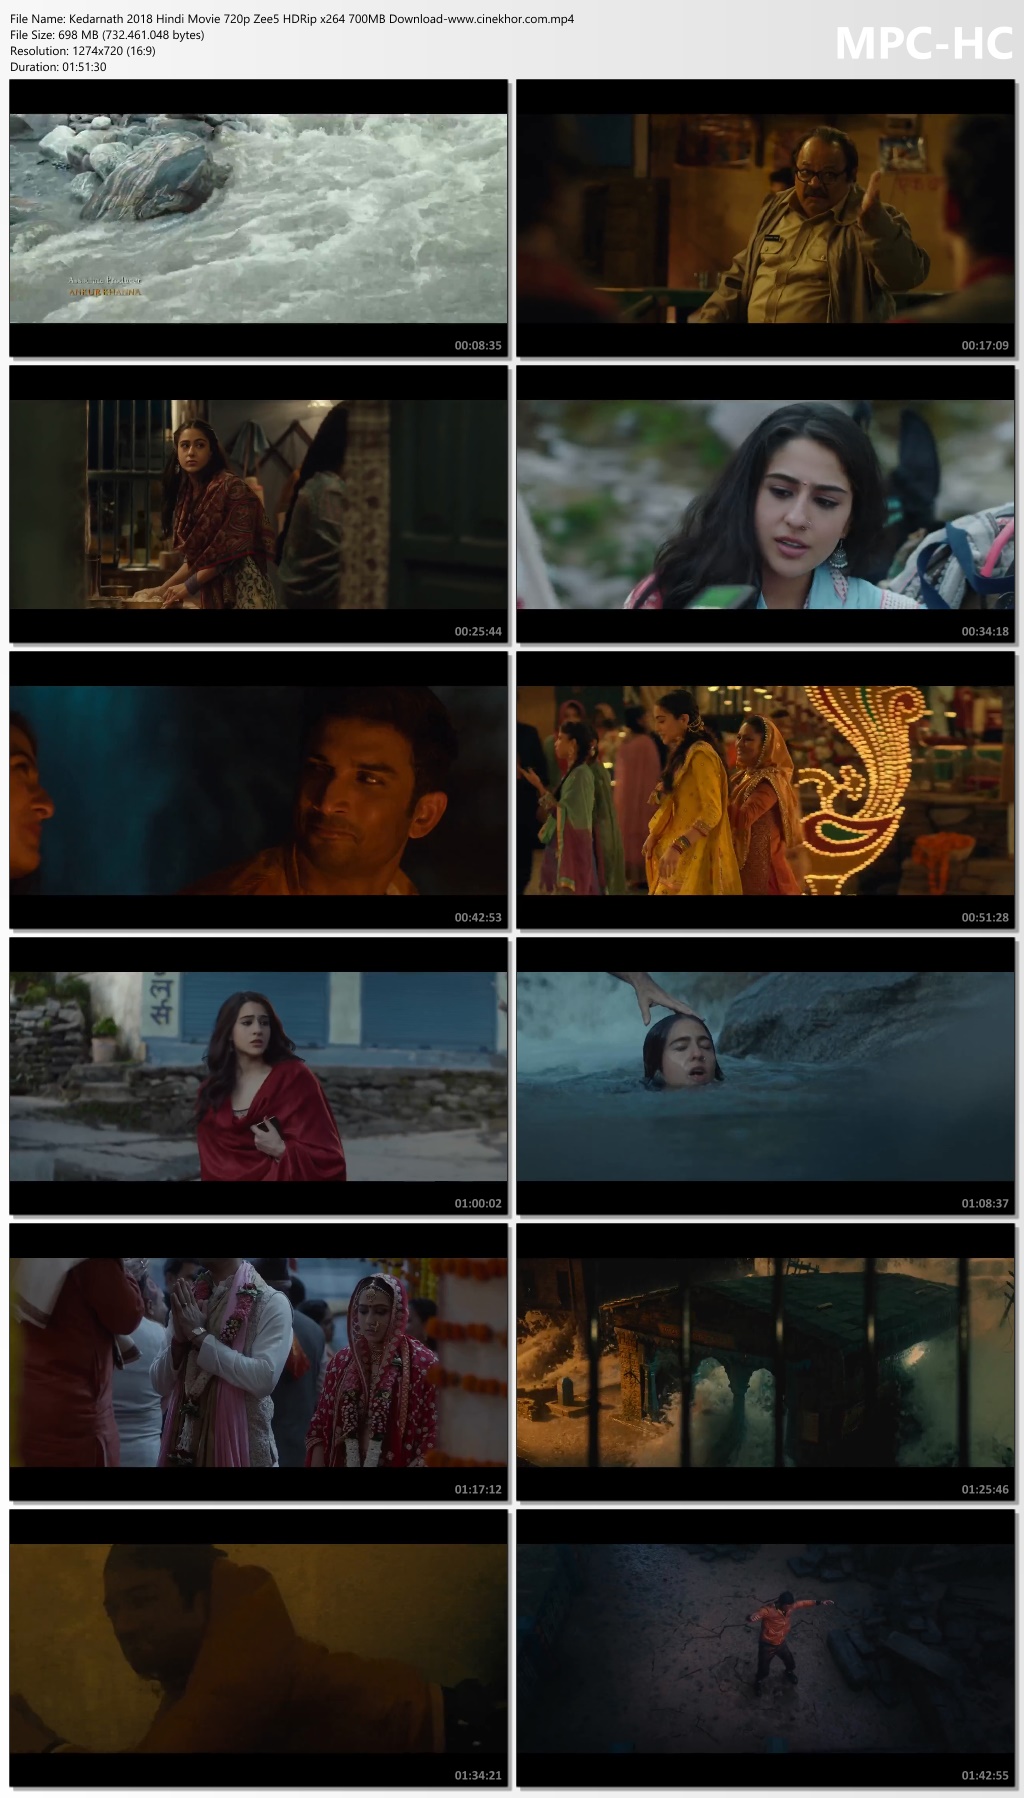 kedarnath movie download pagalmovies 1080p